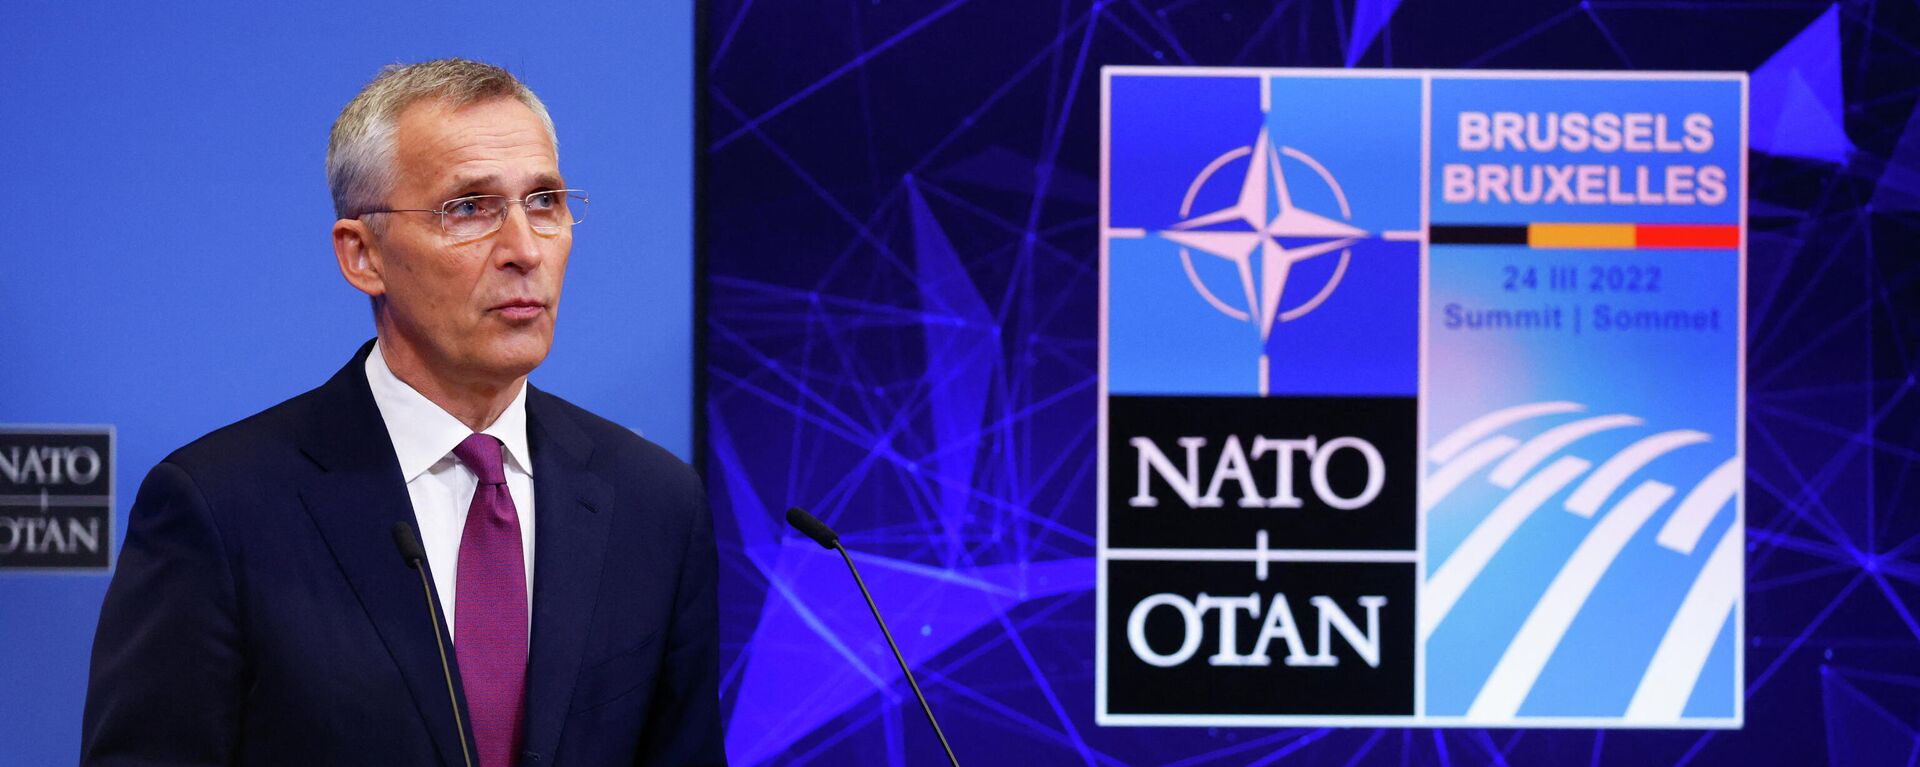 O secretário-geral da OTAN, Jens Stoltenberg, participa de uma coletiva de imprensa na véspera de uma cúpula da OTAN, em Bruxelas, Bélgica, em 23 de março de 2022 - Sputnik Brasil, 1920, 23.03.2022